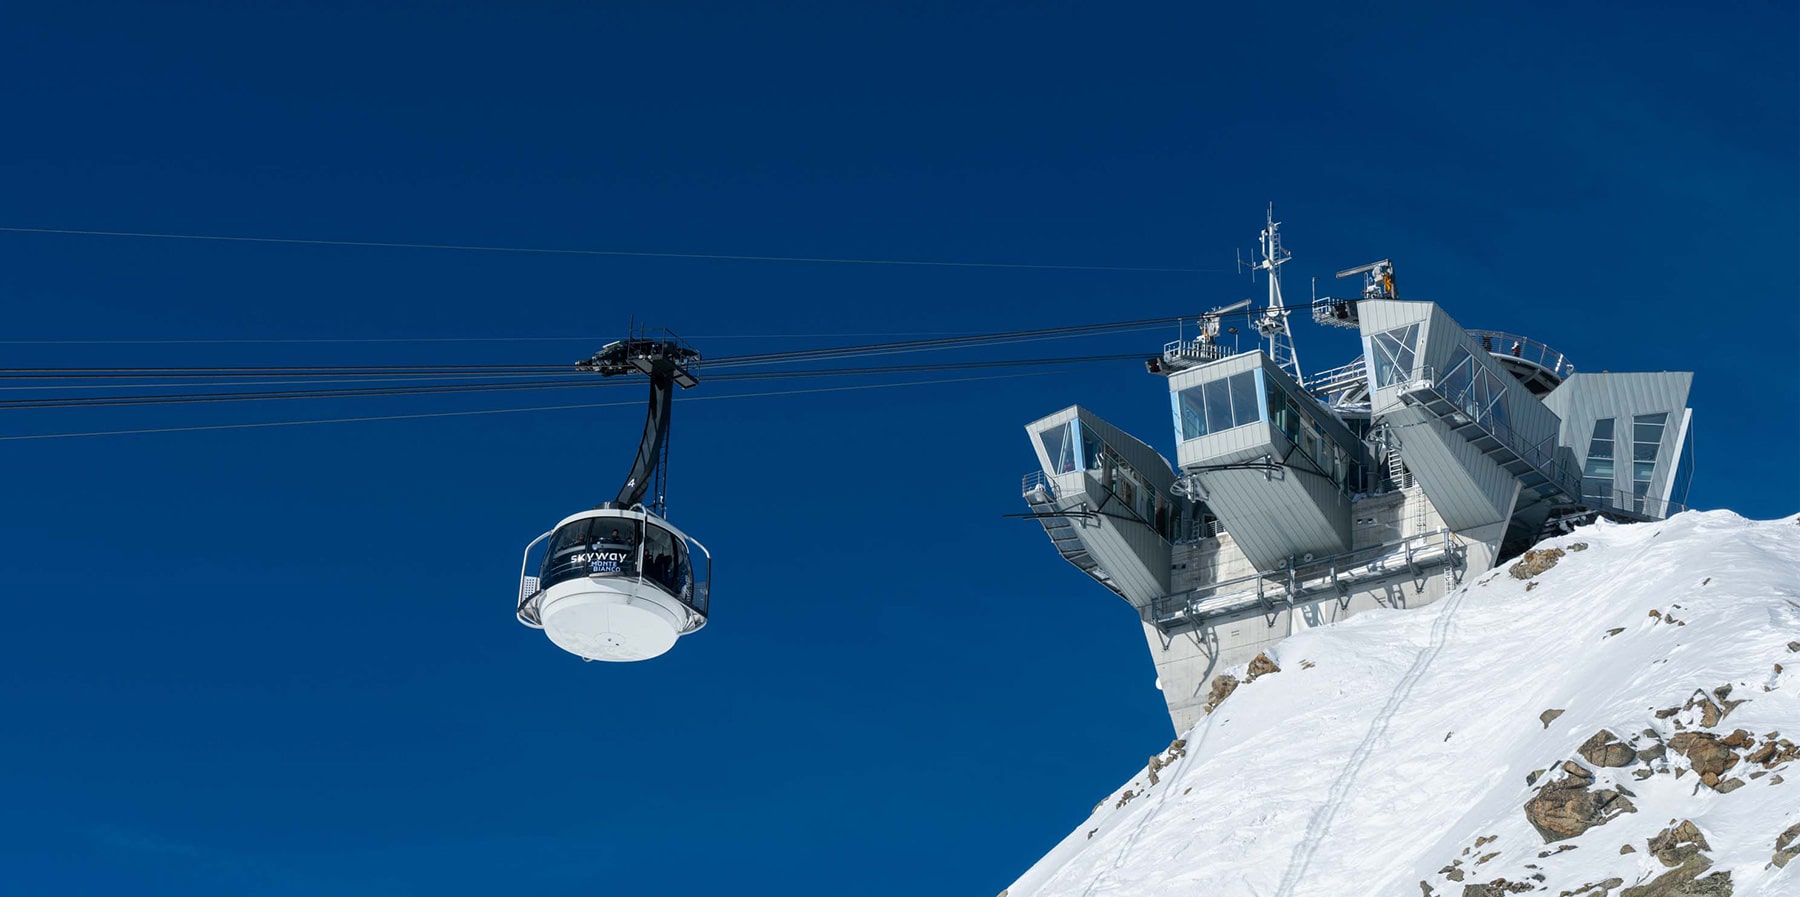 Skyway Mont Blanc, Courmayeur